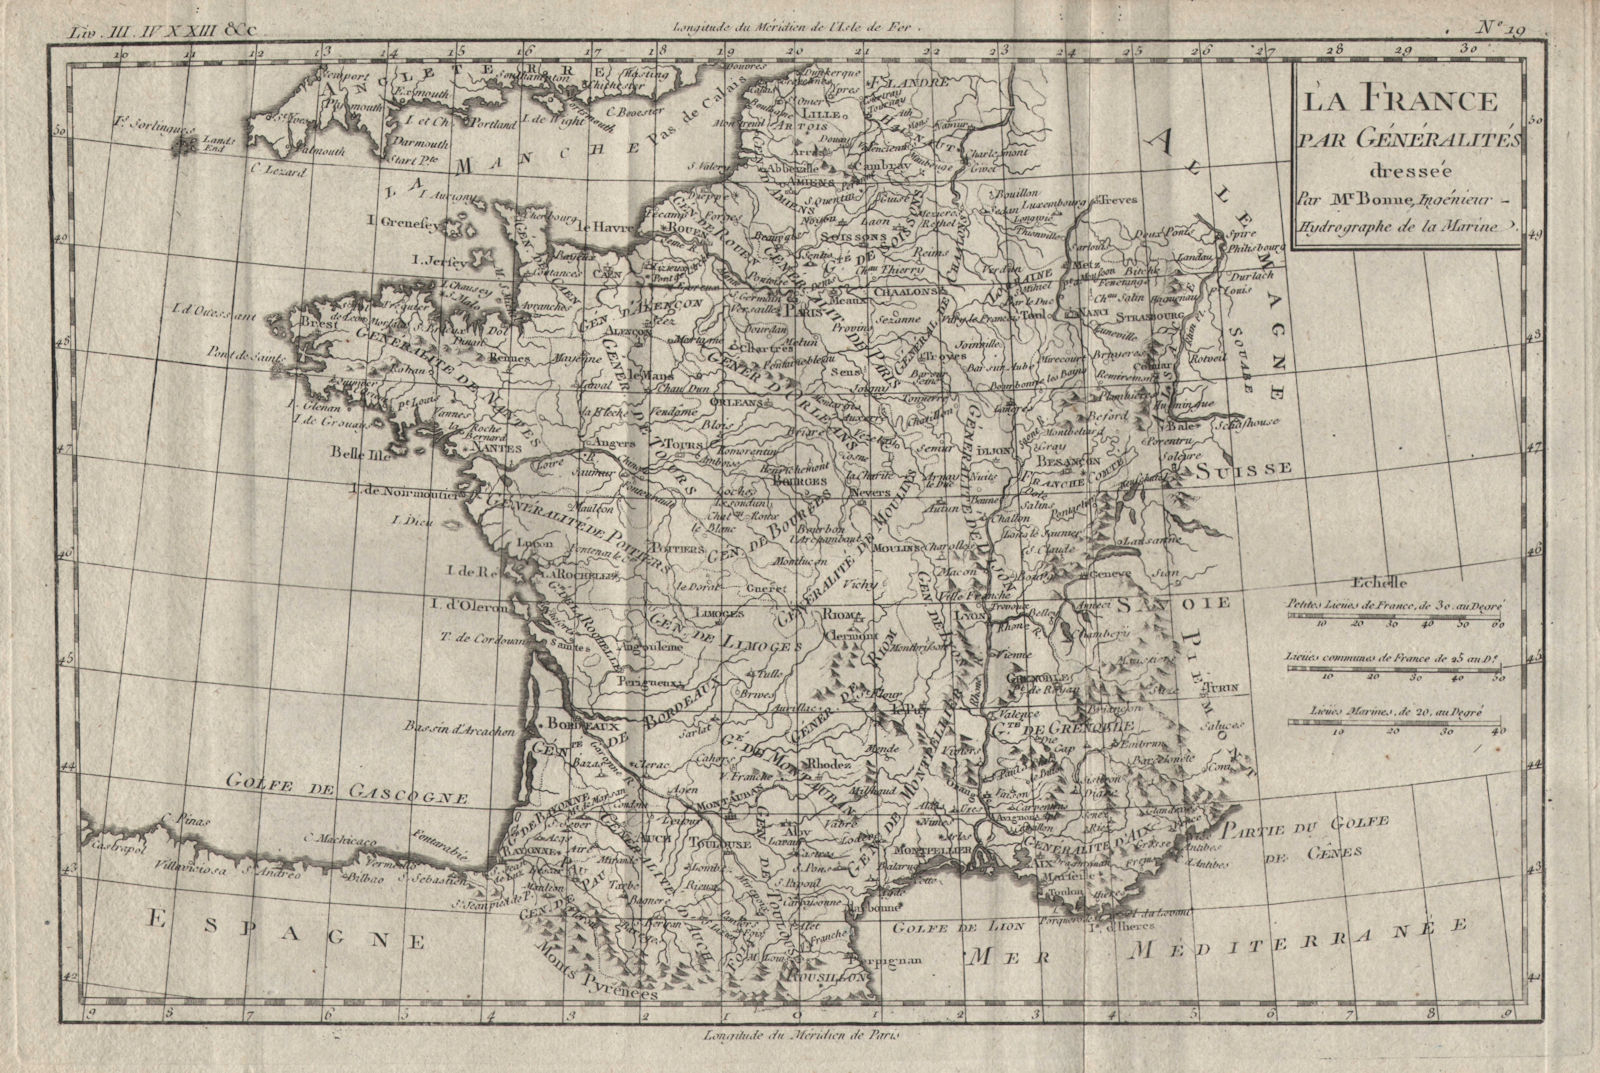 Associate Product "La France par Généralities". Ancien Régime France. BONNE 1780 old antique map